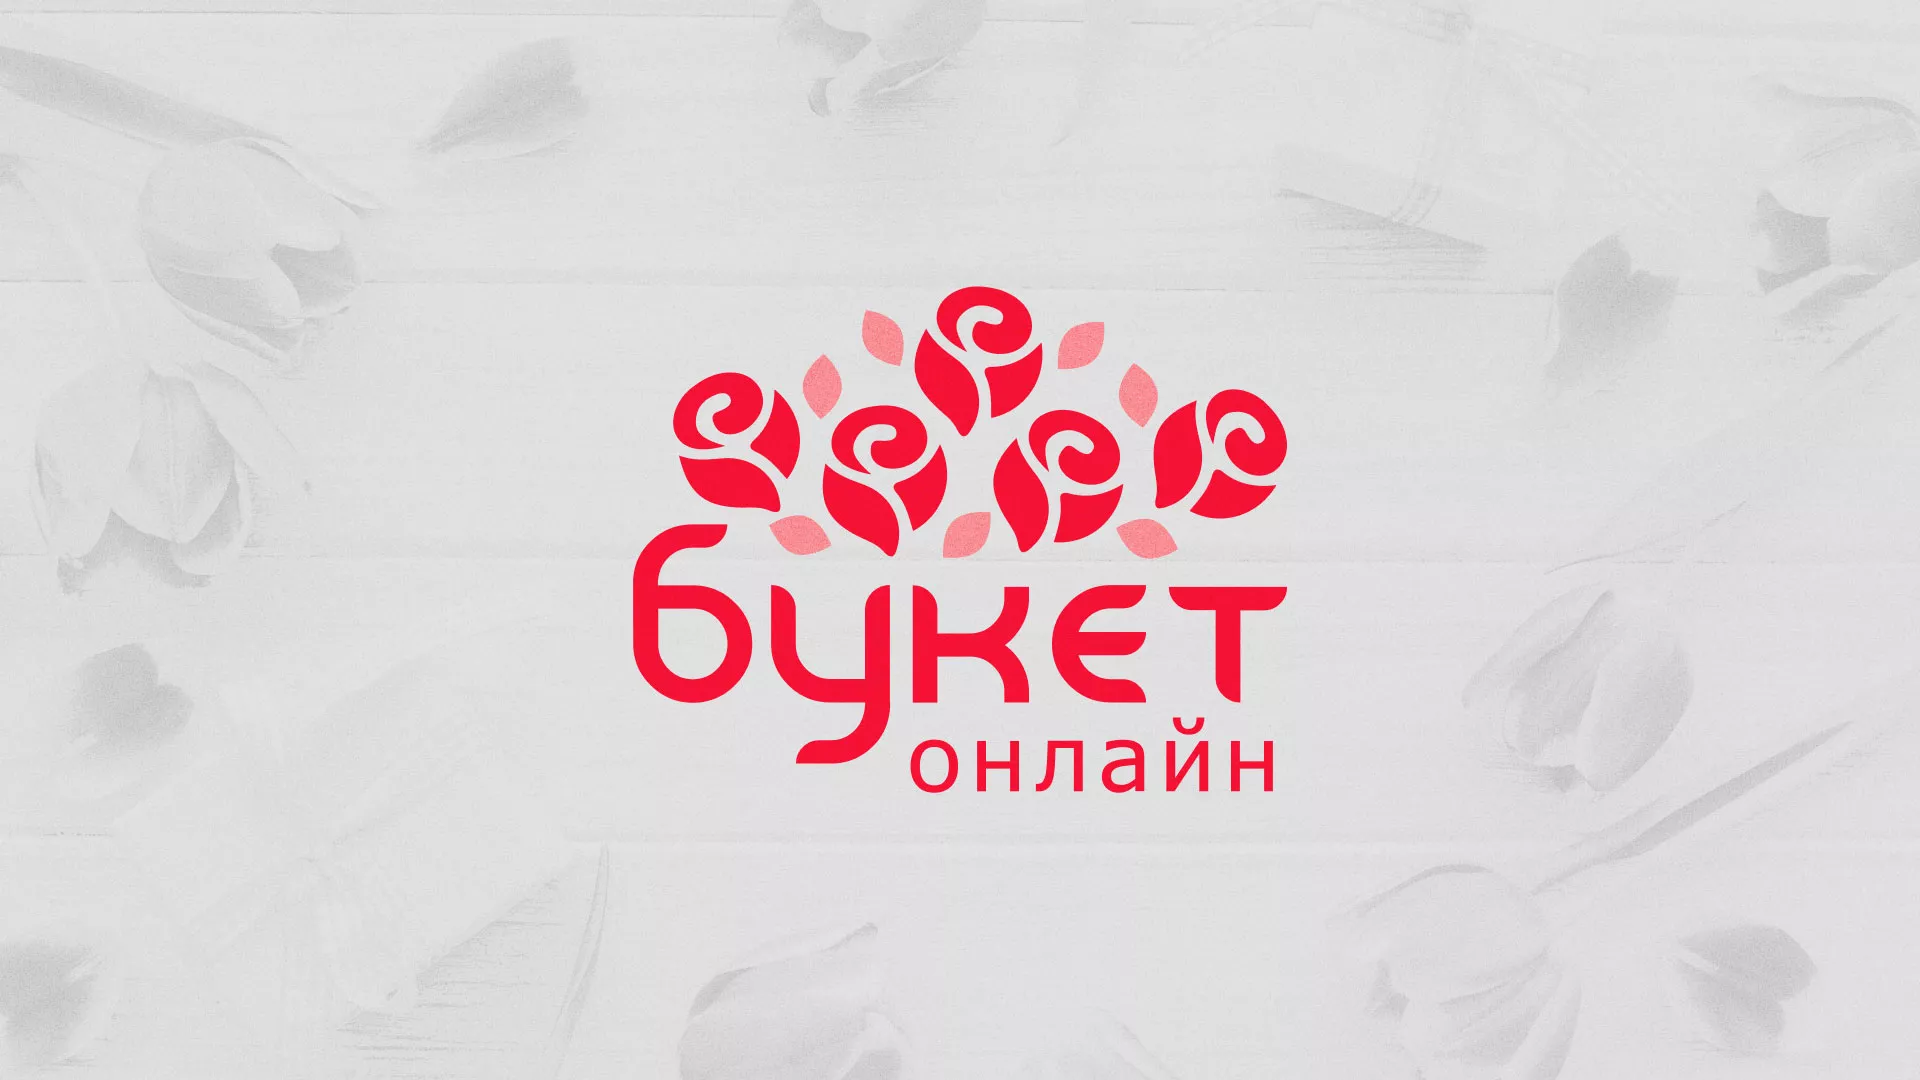 Создание интернет-магазина «Букет-онлайн» по цветам в Заволжске